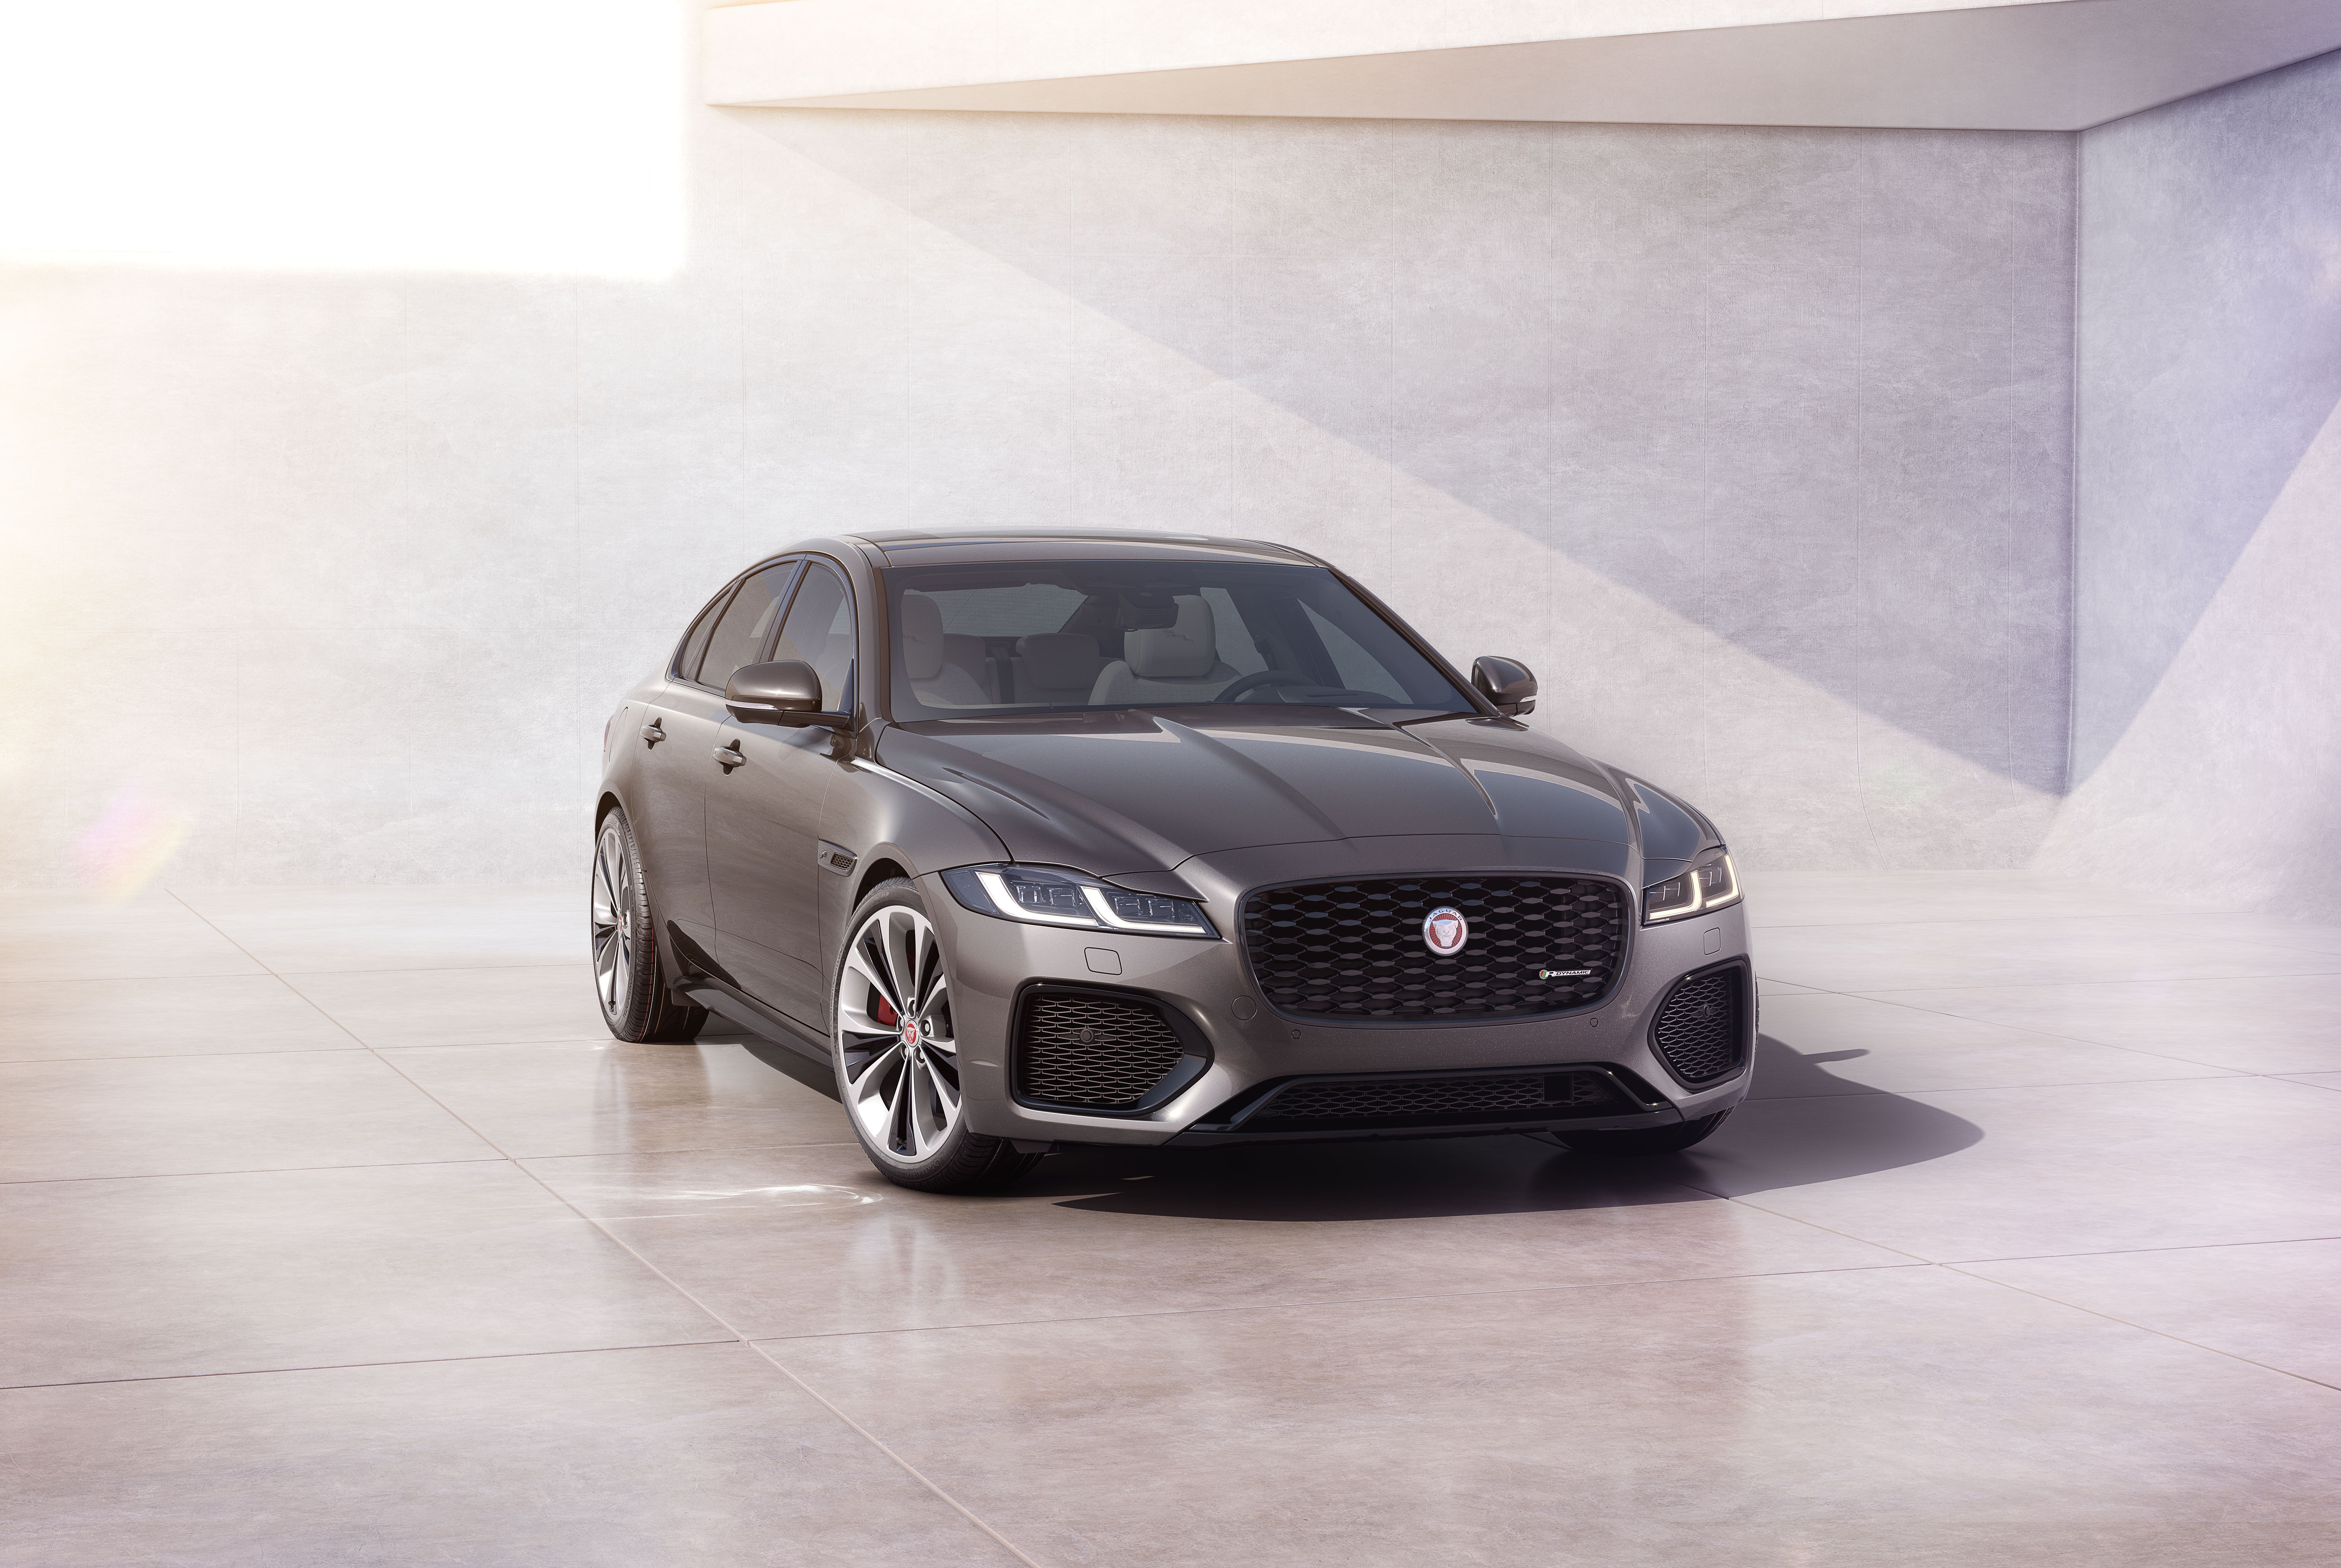 2021 Jaguar XF Review: Same Great Drive, Beautiful New Interior